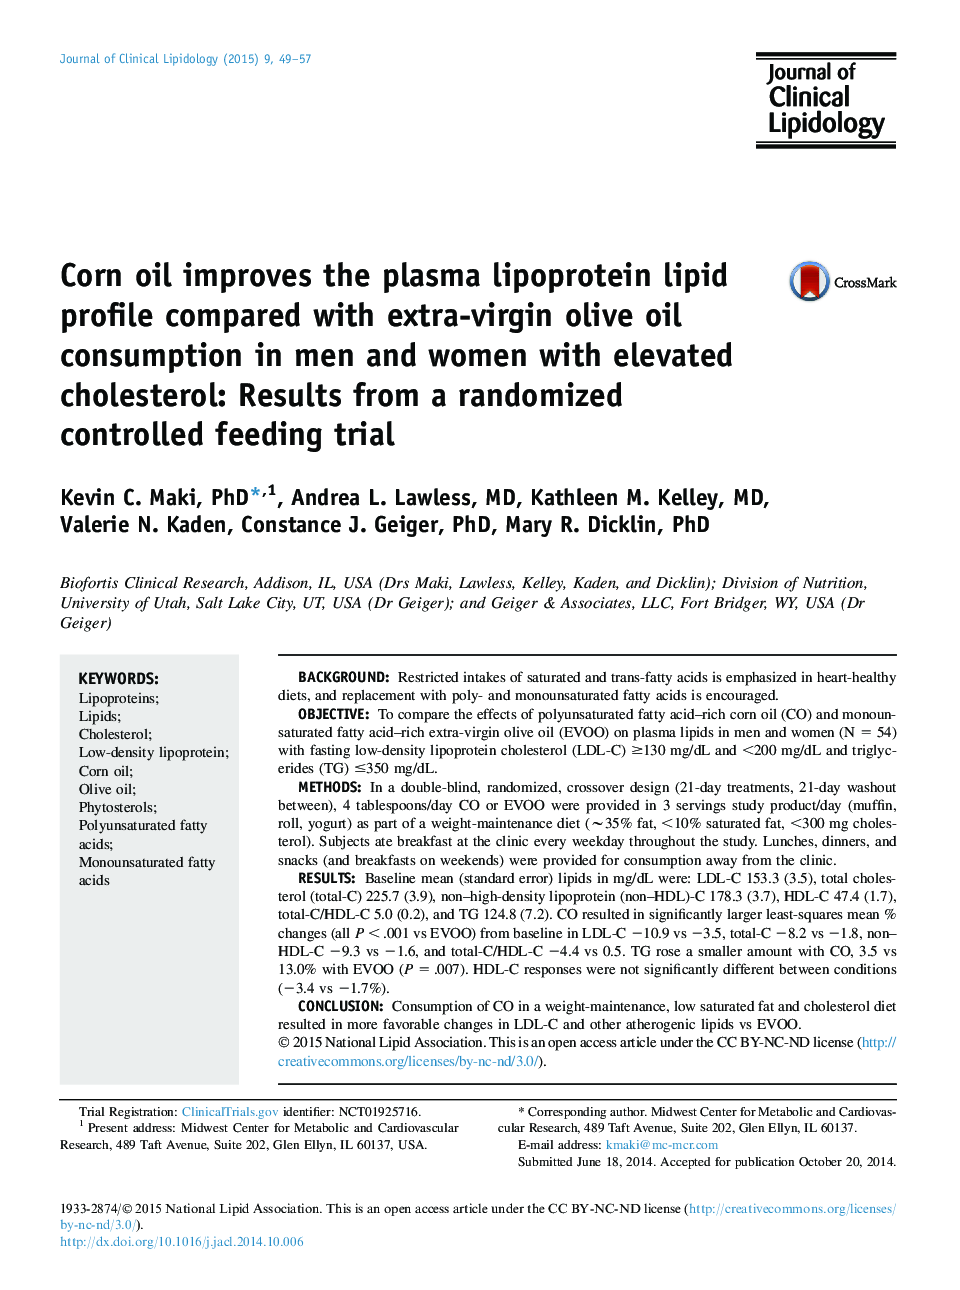 روغن ذرت لیپید لیپوپروتئین پلاسما را در مقایسه با مصرف روغن زیتون فوق العاده در مردان و زنان با کلسترول بالا بهبود می بخشد: نتایج یک پروسه تغذیه کنترل تصادفی 